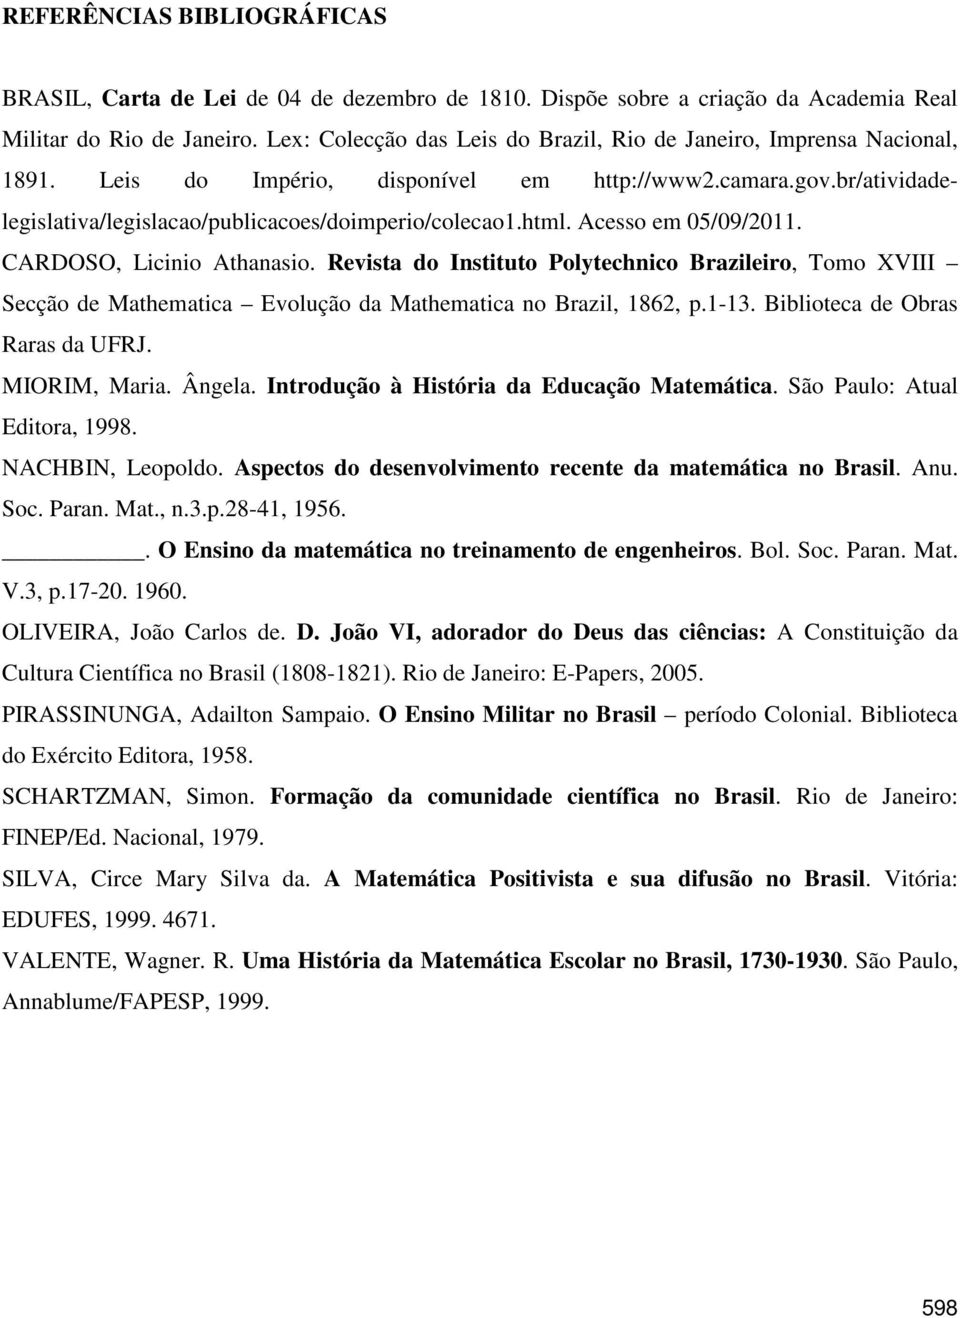 Acesso em 05/09/2011. CARDOSO, Licinio Athanasio. Revista do Instituto Polytechnico Brazileiro, Tomo XVIII Secção de Mathematica Evolução da Mathematica no Brazil, 1862, p.1-13.